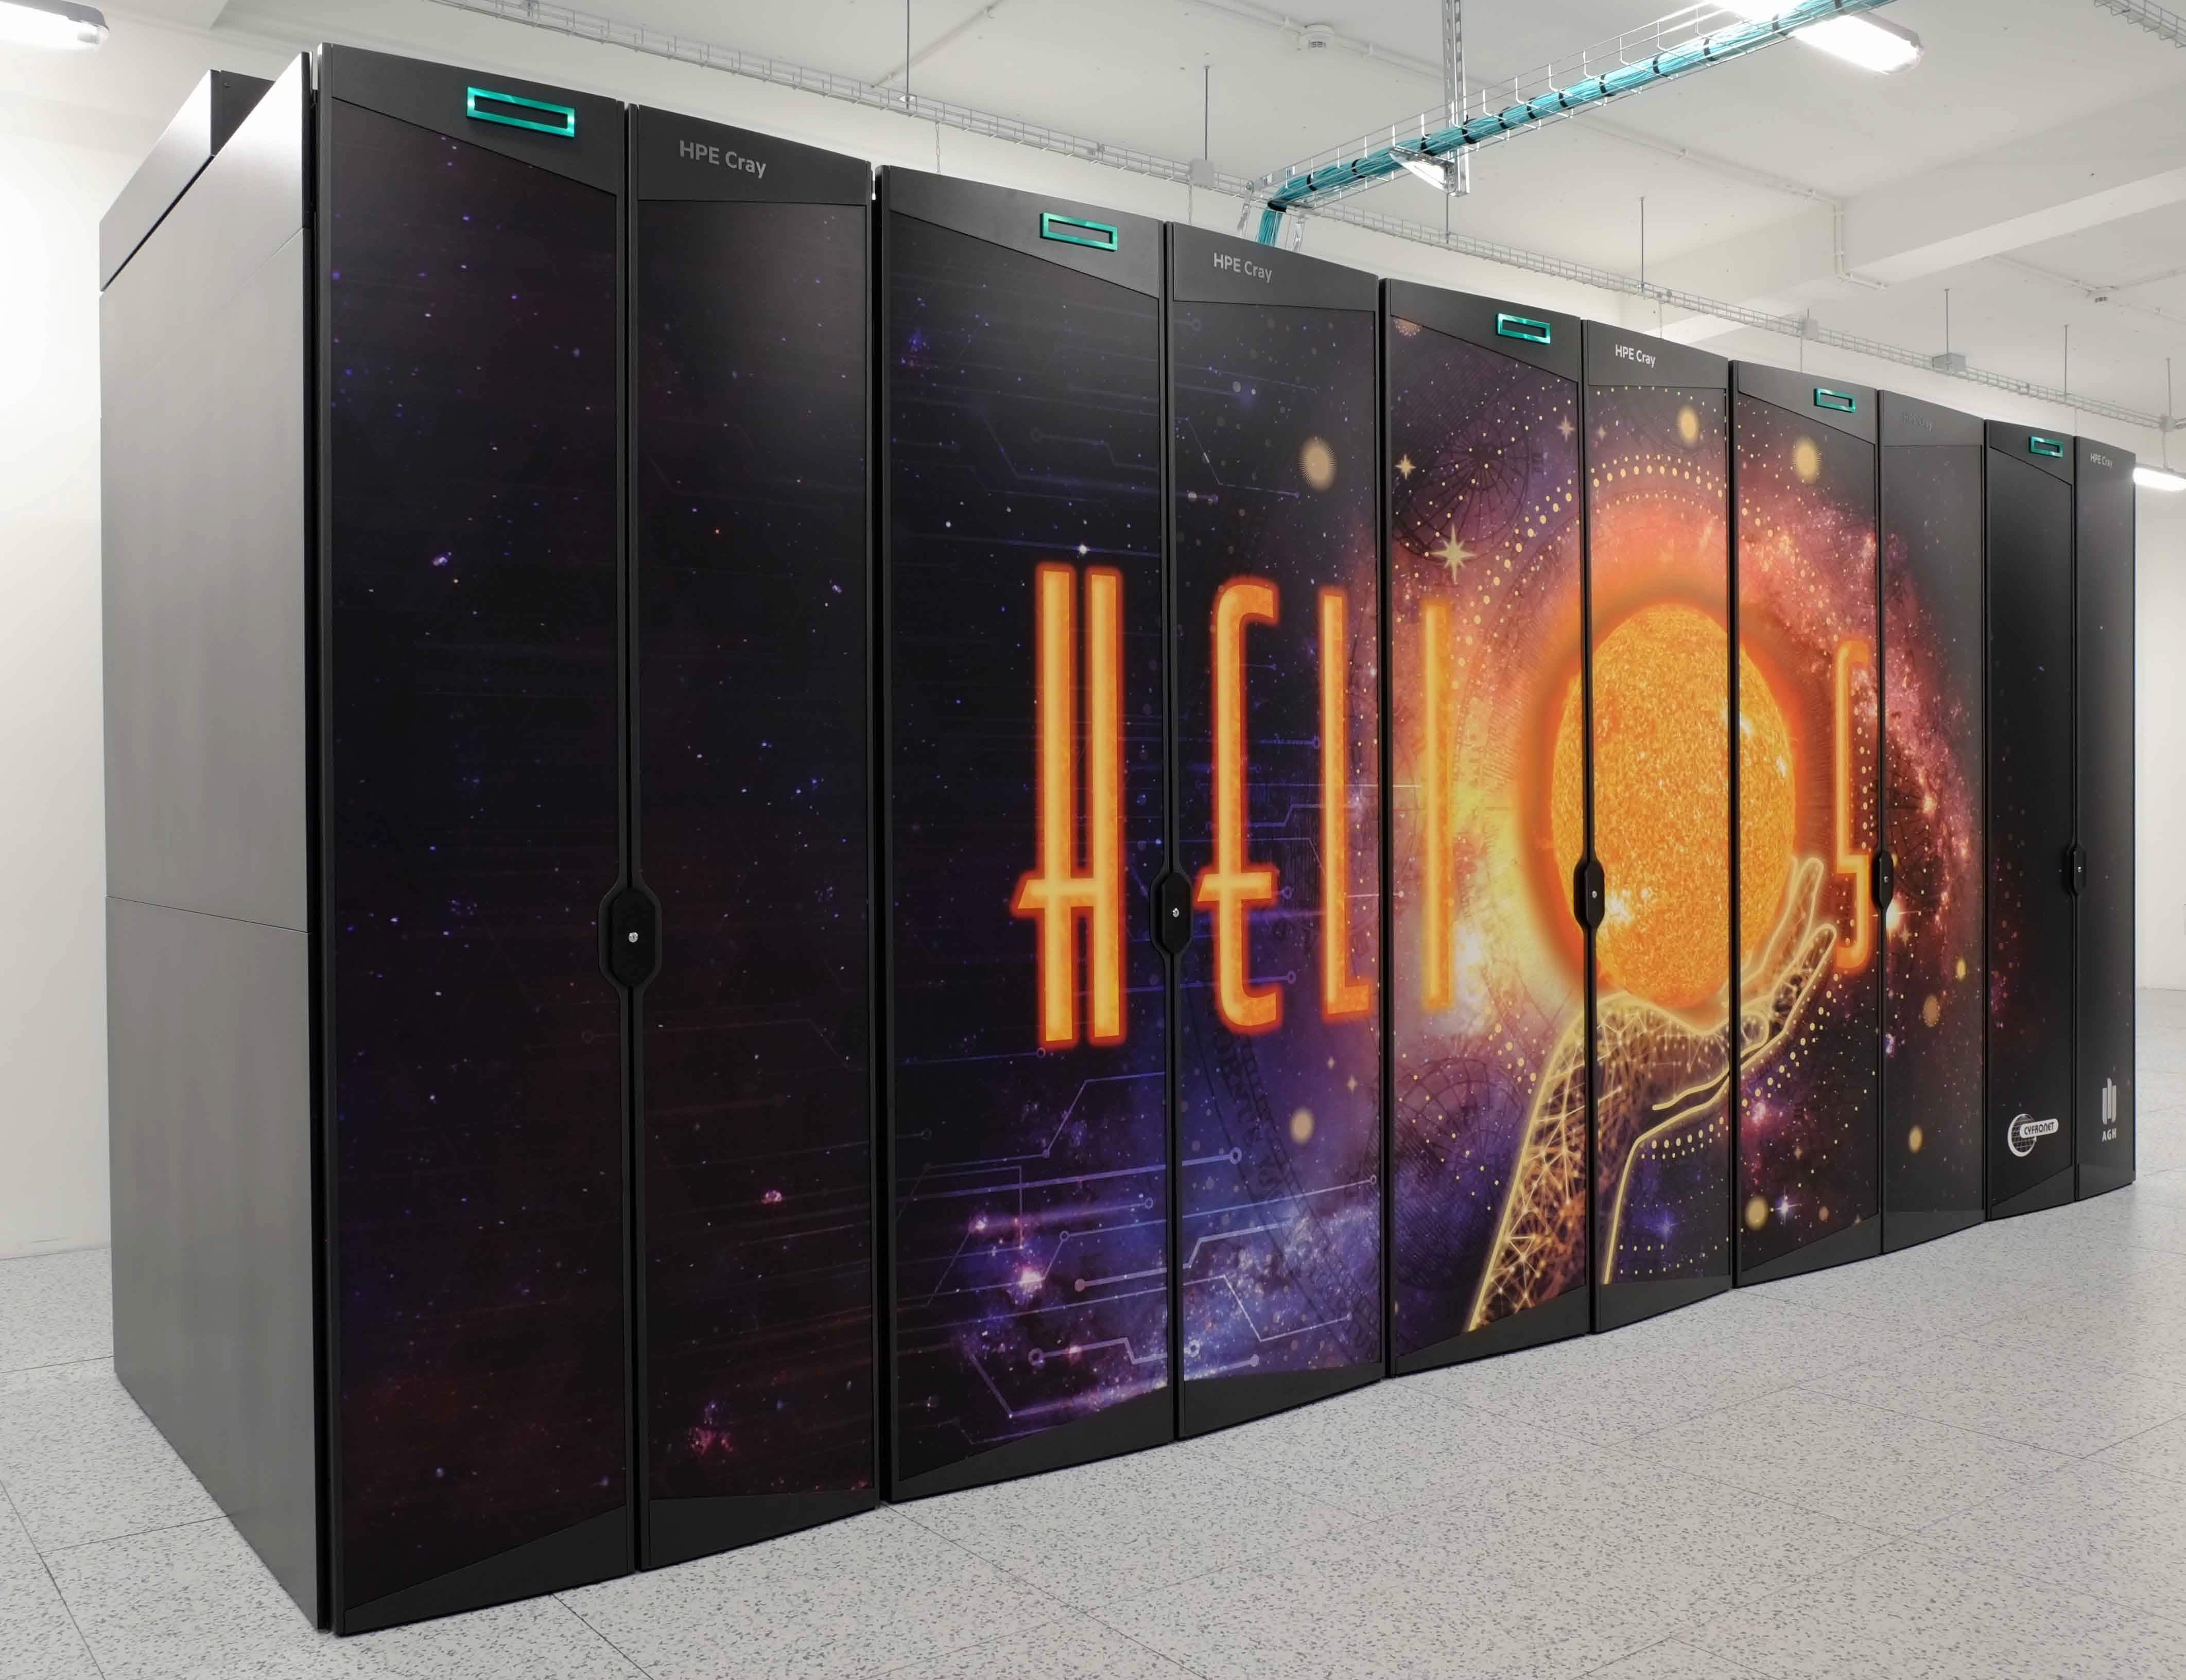 Helios - nowy najpotężniejszy superkomputer w Polsce